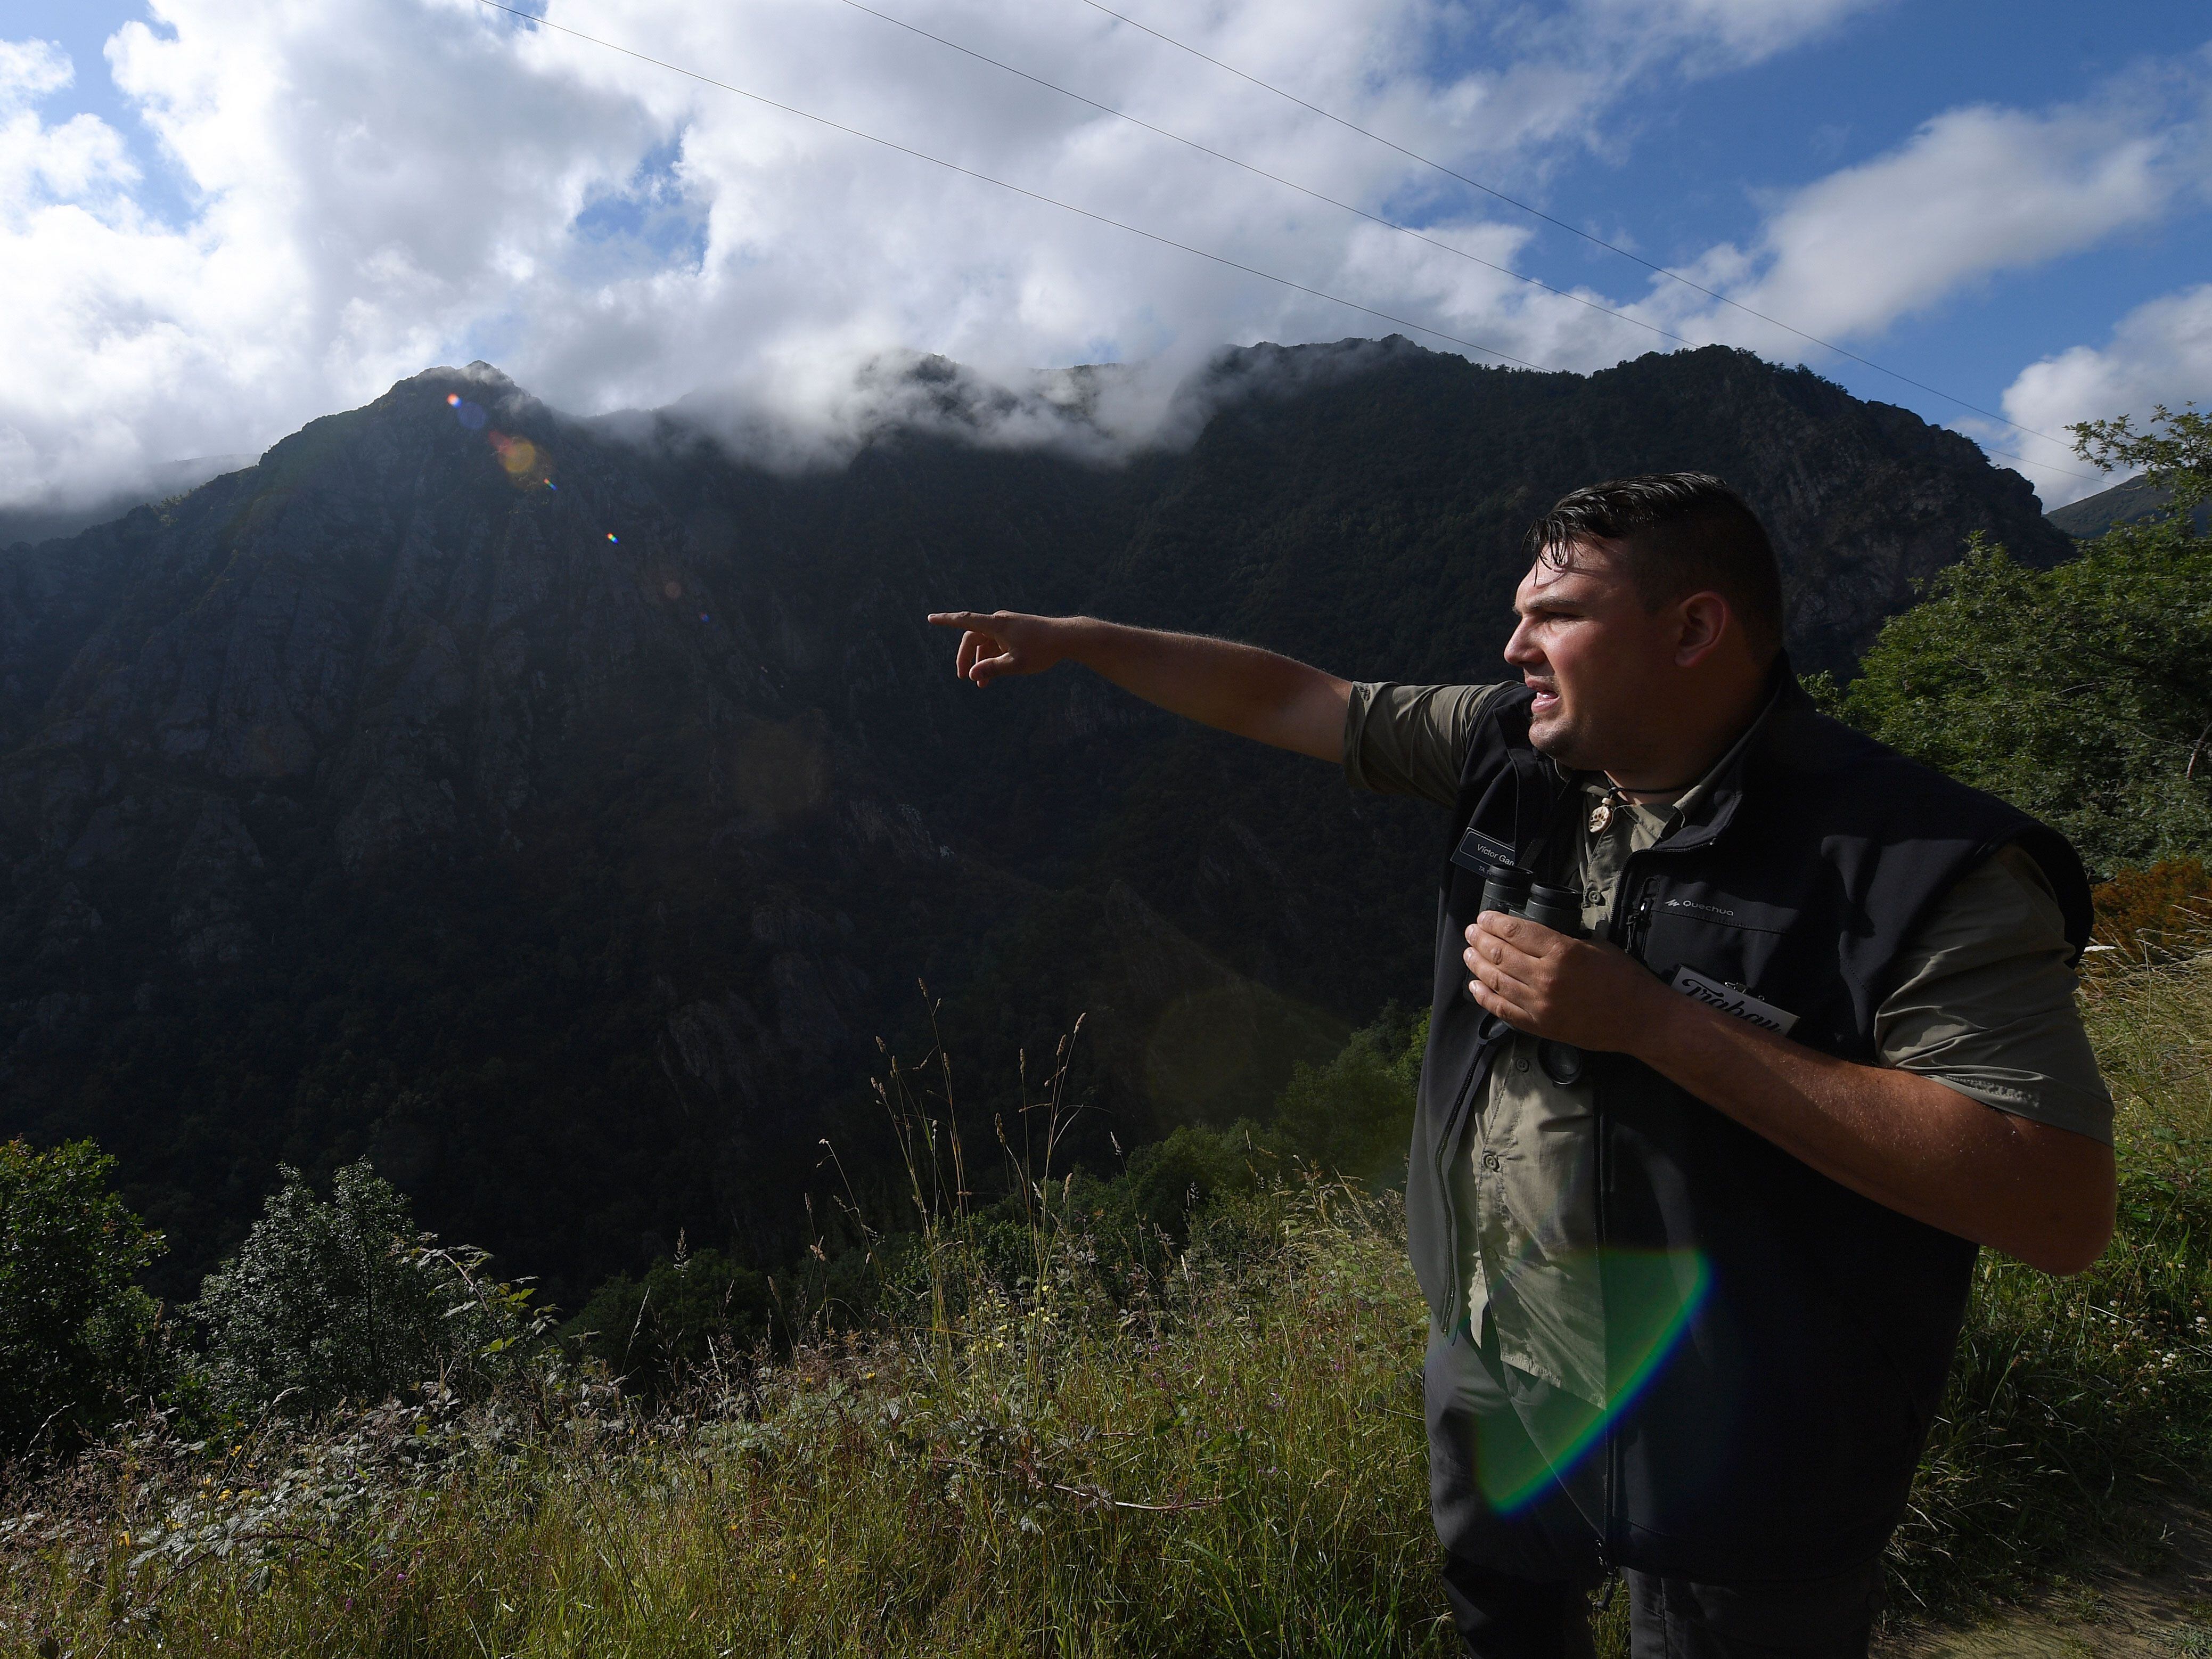 El técnico forestal Víctor García en una de las visitas guiadas que organiza en el Parque Natural de Fuentes del Narcea, Degaña e Ibias, refugio de unos 300 osos.